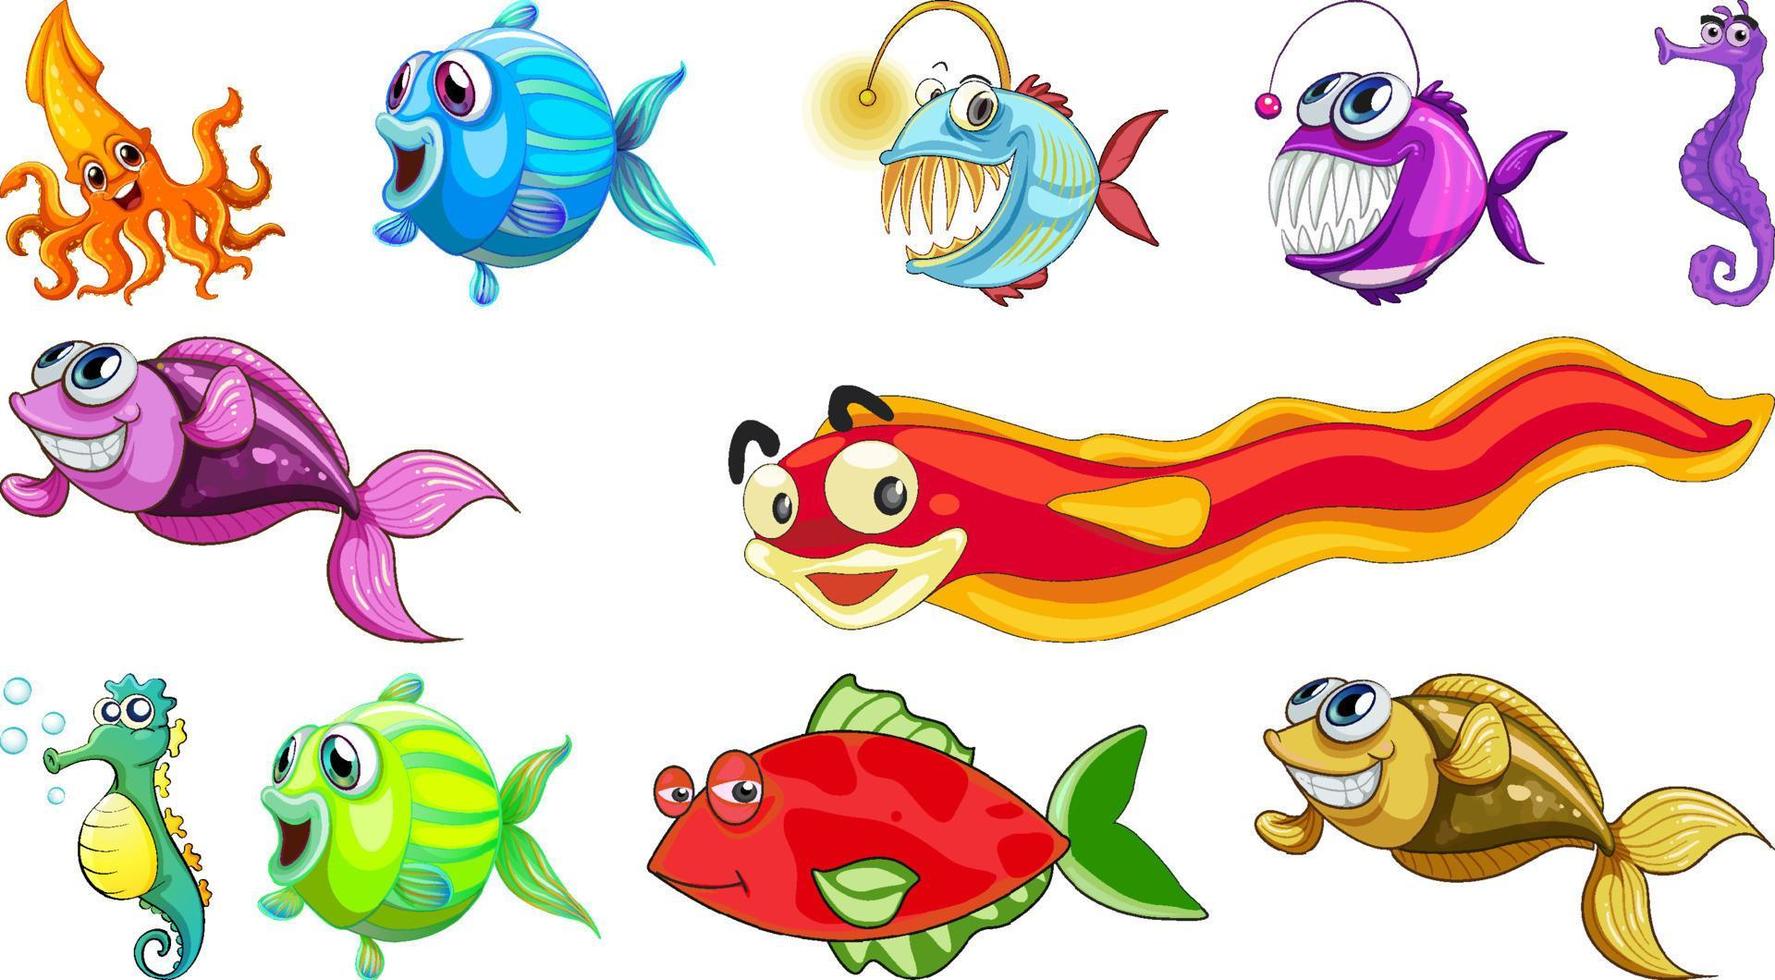 coleção de desenhos animados de animais marinhos vetor